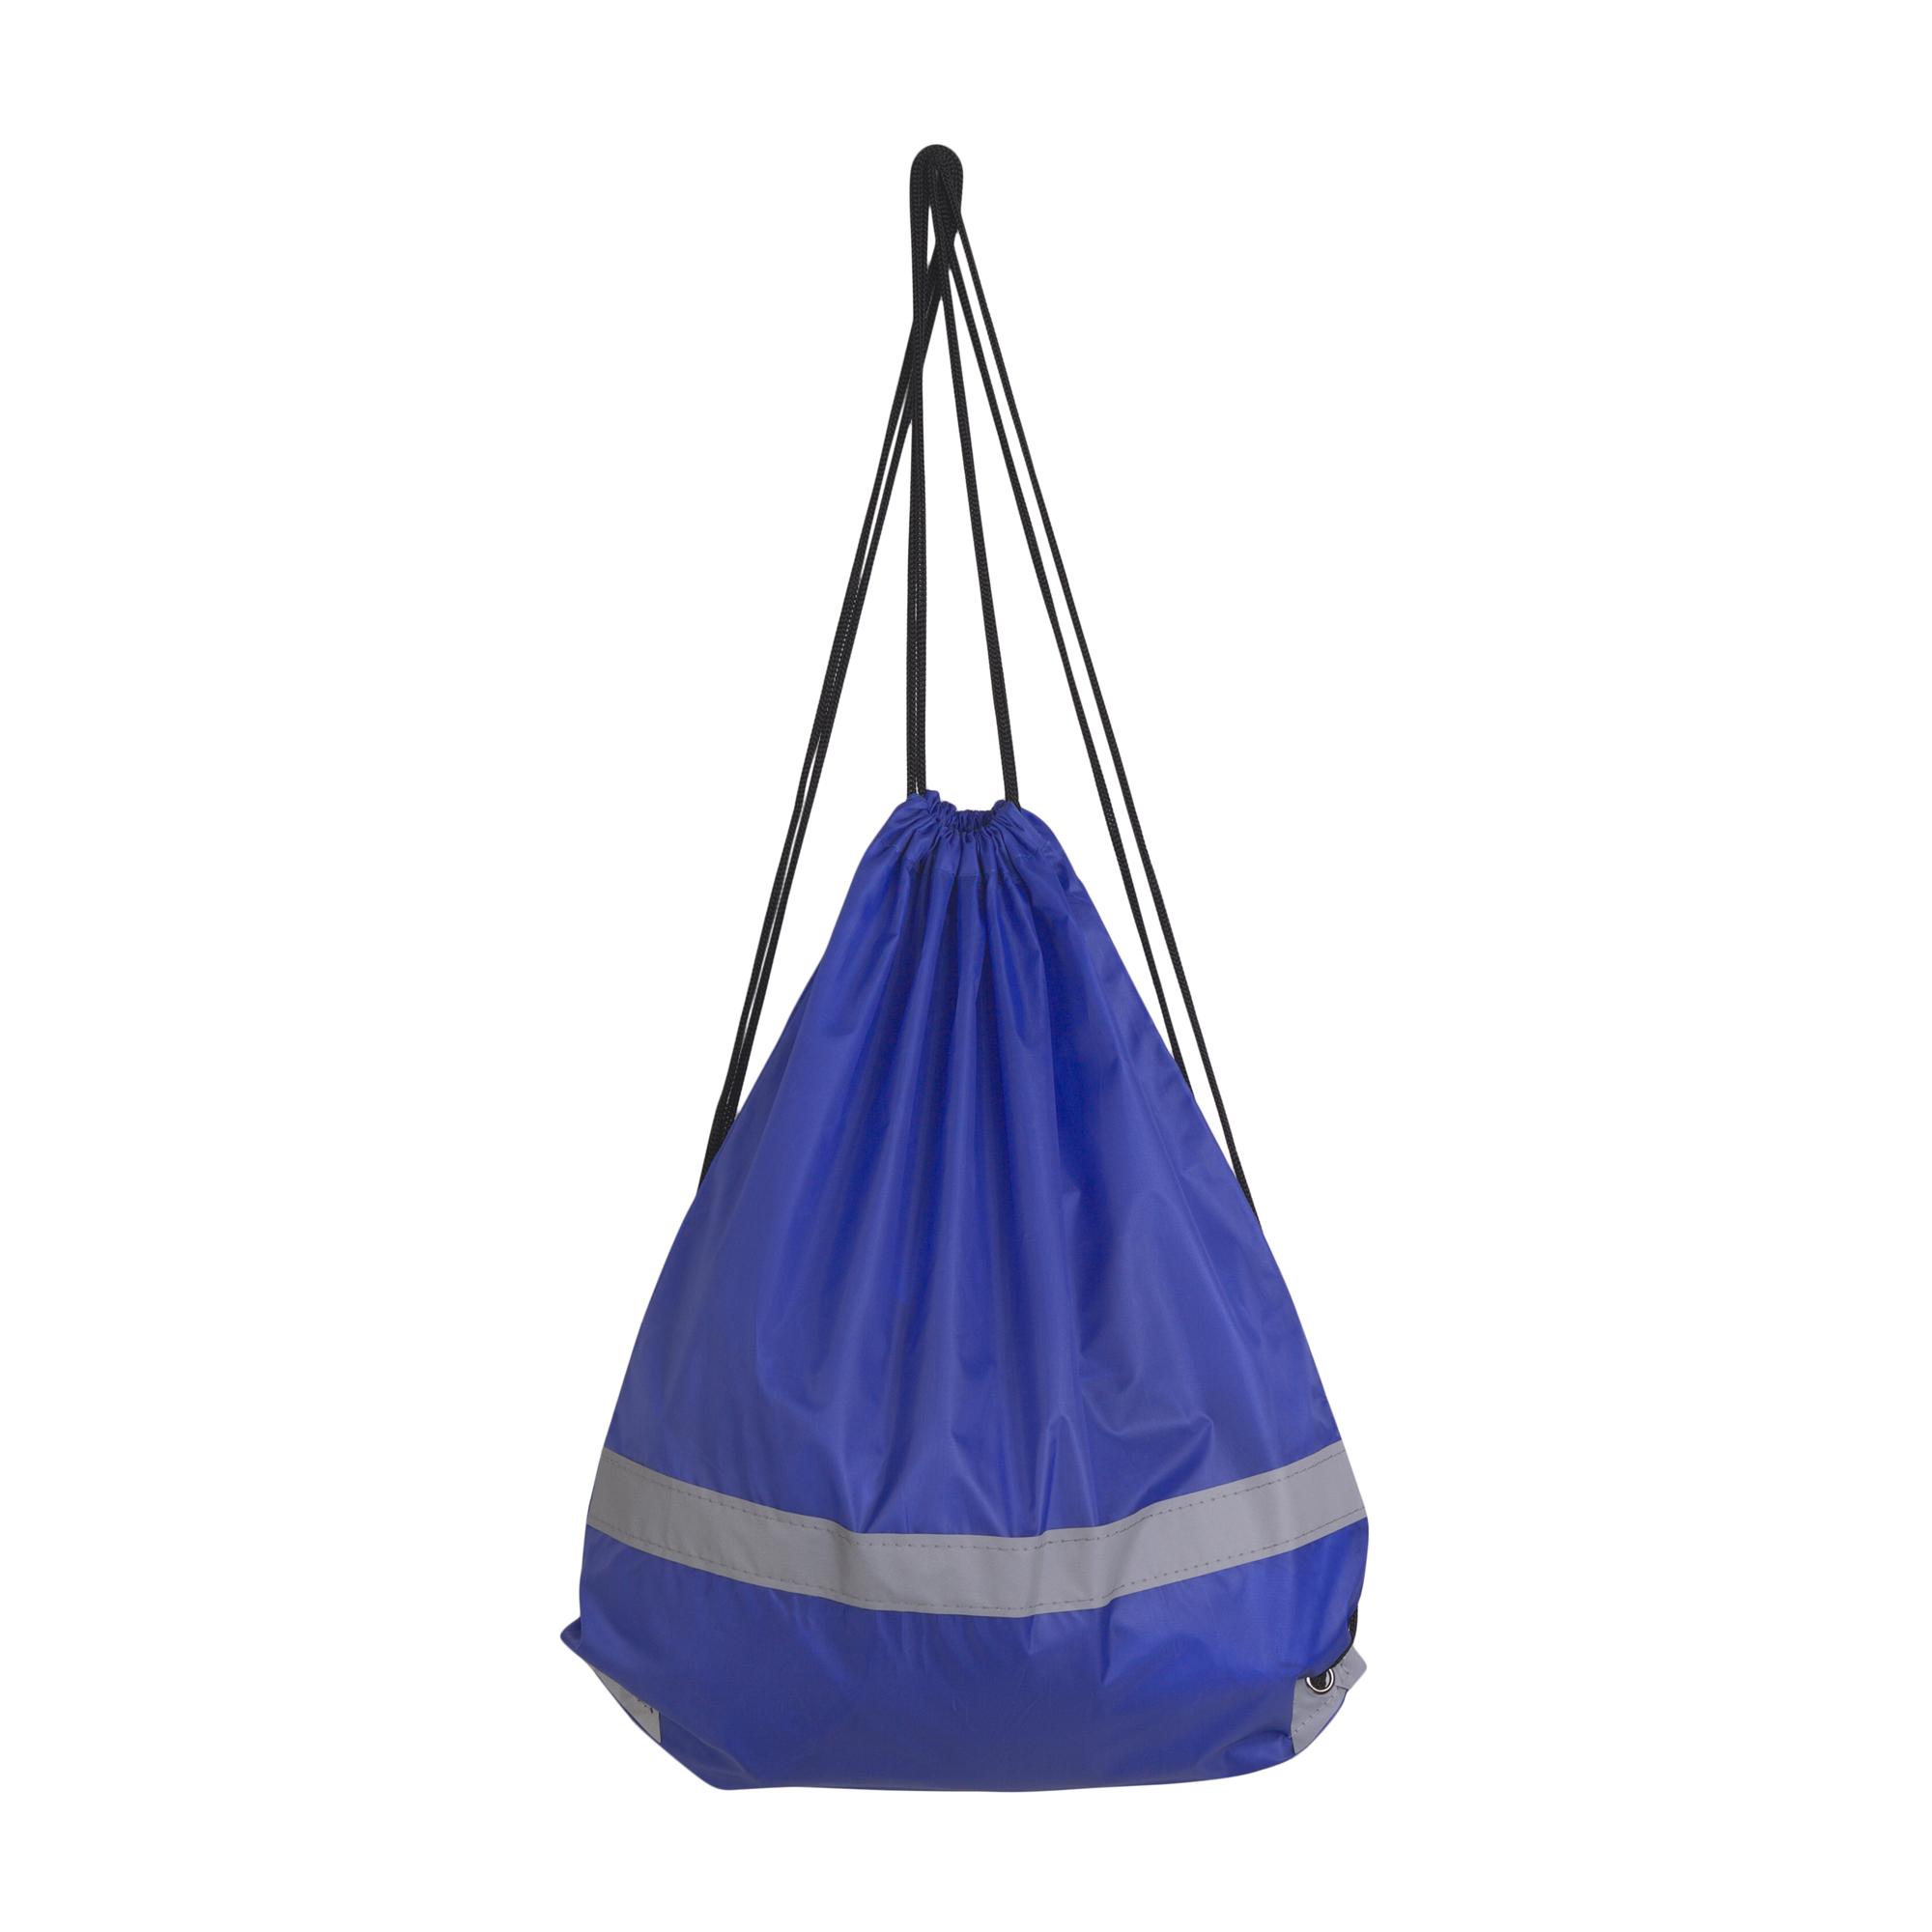 Рюкзак "Flash", цвет синий, фото 3